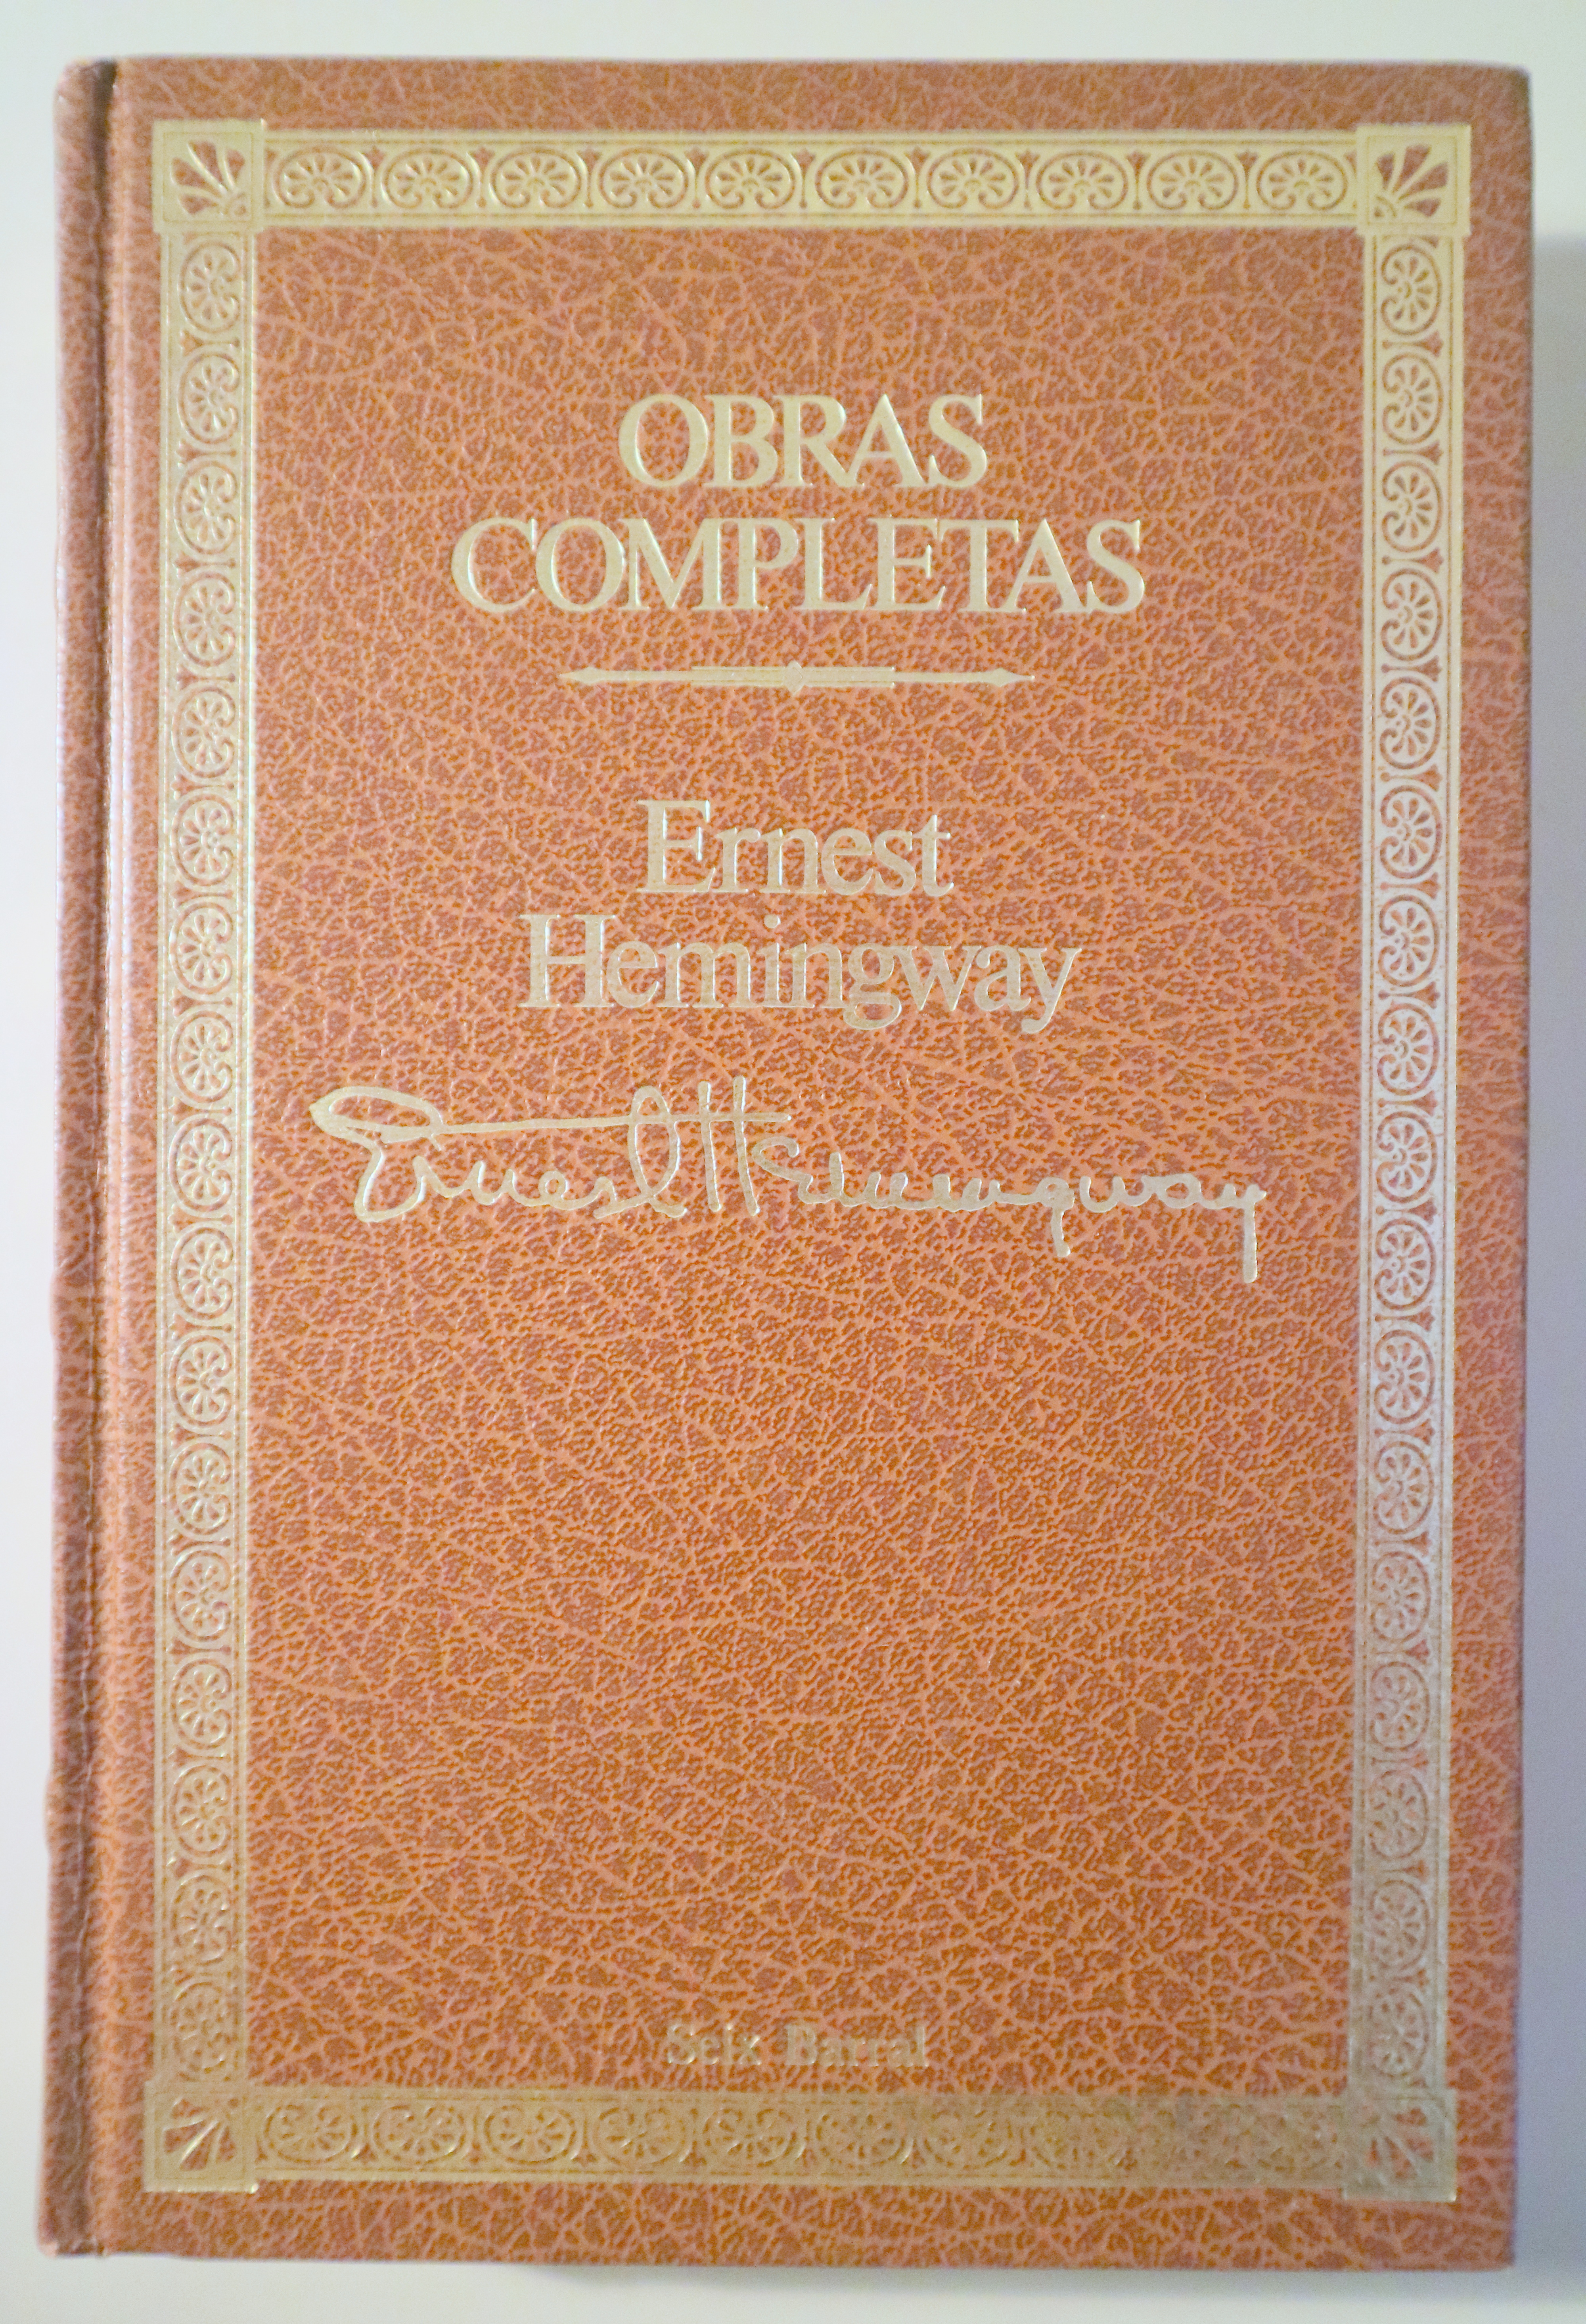 OBRAS COMPLETAS 2. Narrativa completa I - Barcelona 1986